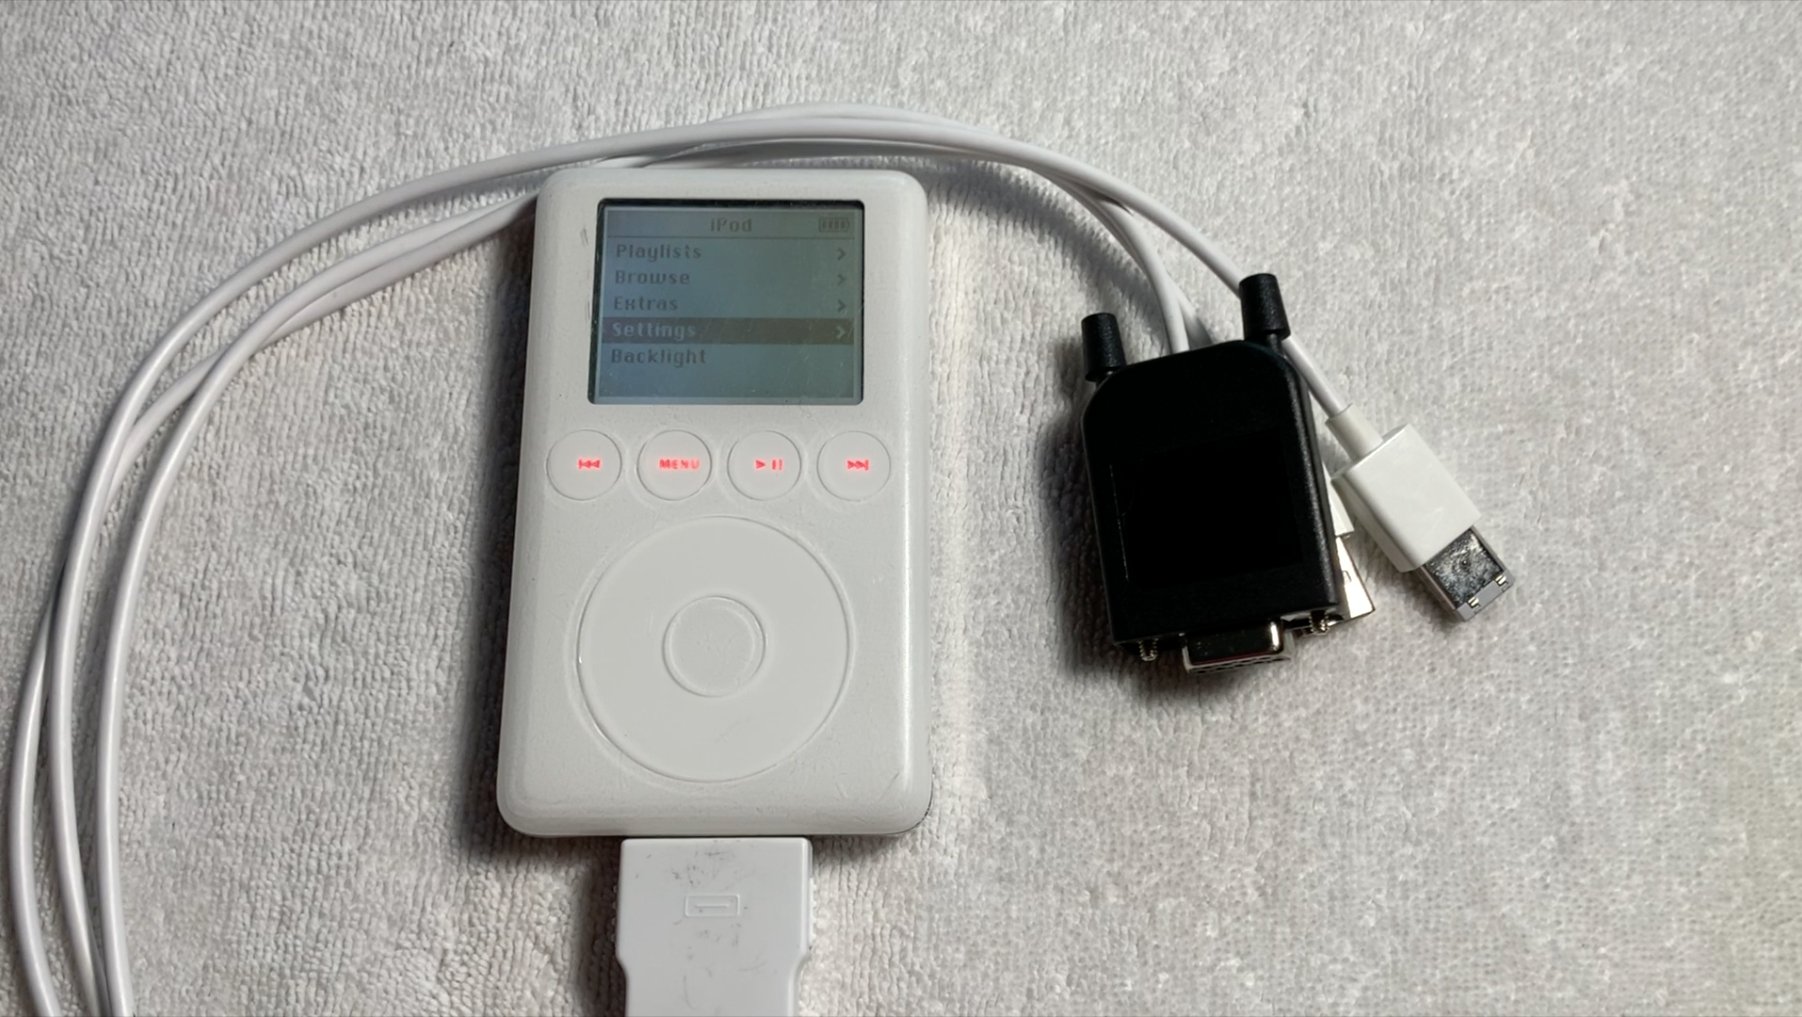 Знайдено прототип Apple iPod з грою-клоном Тетриса. Він так і не був випущений